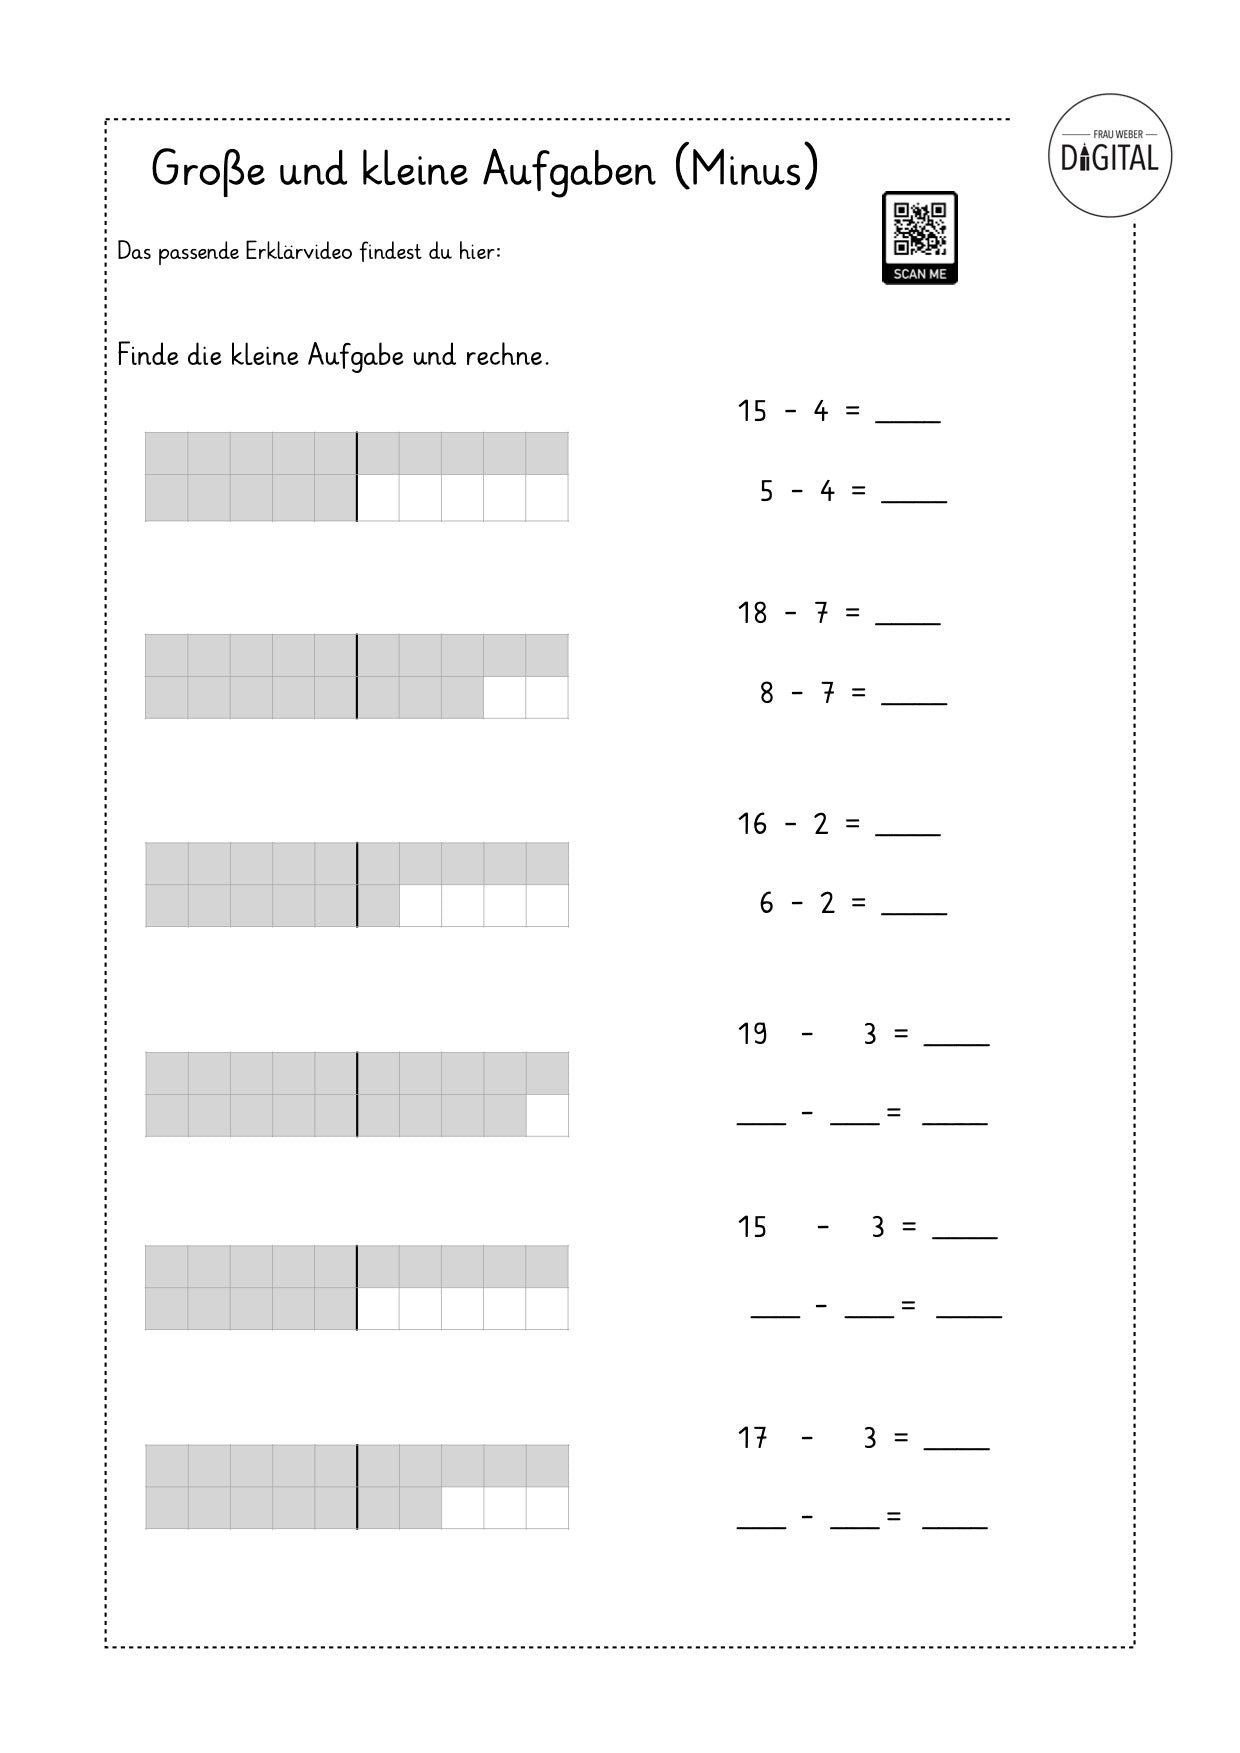 Verwandte Aufgaben (Minus) - Arbeitsblatt mit Lösung. Mathe Klasse 1